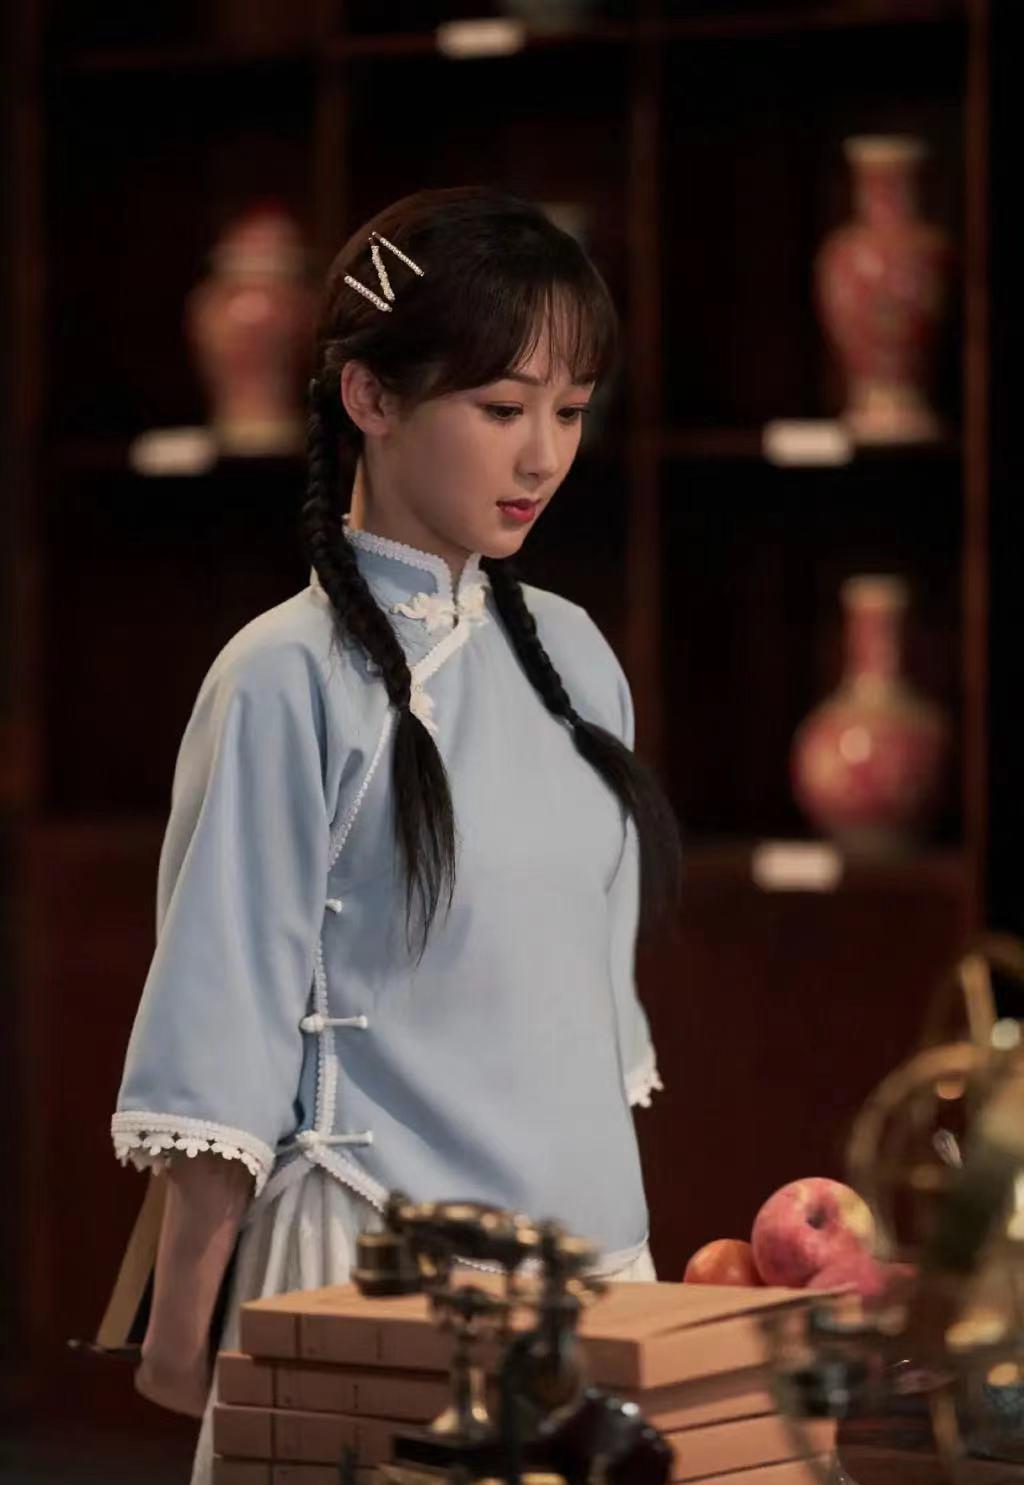 《萌探》中穿旗袍的杨紫俨然是"民国女学生",再次美出